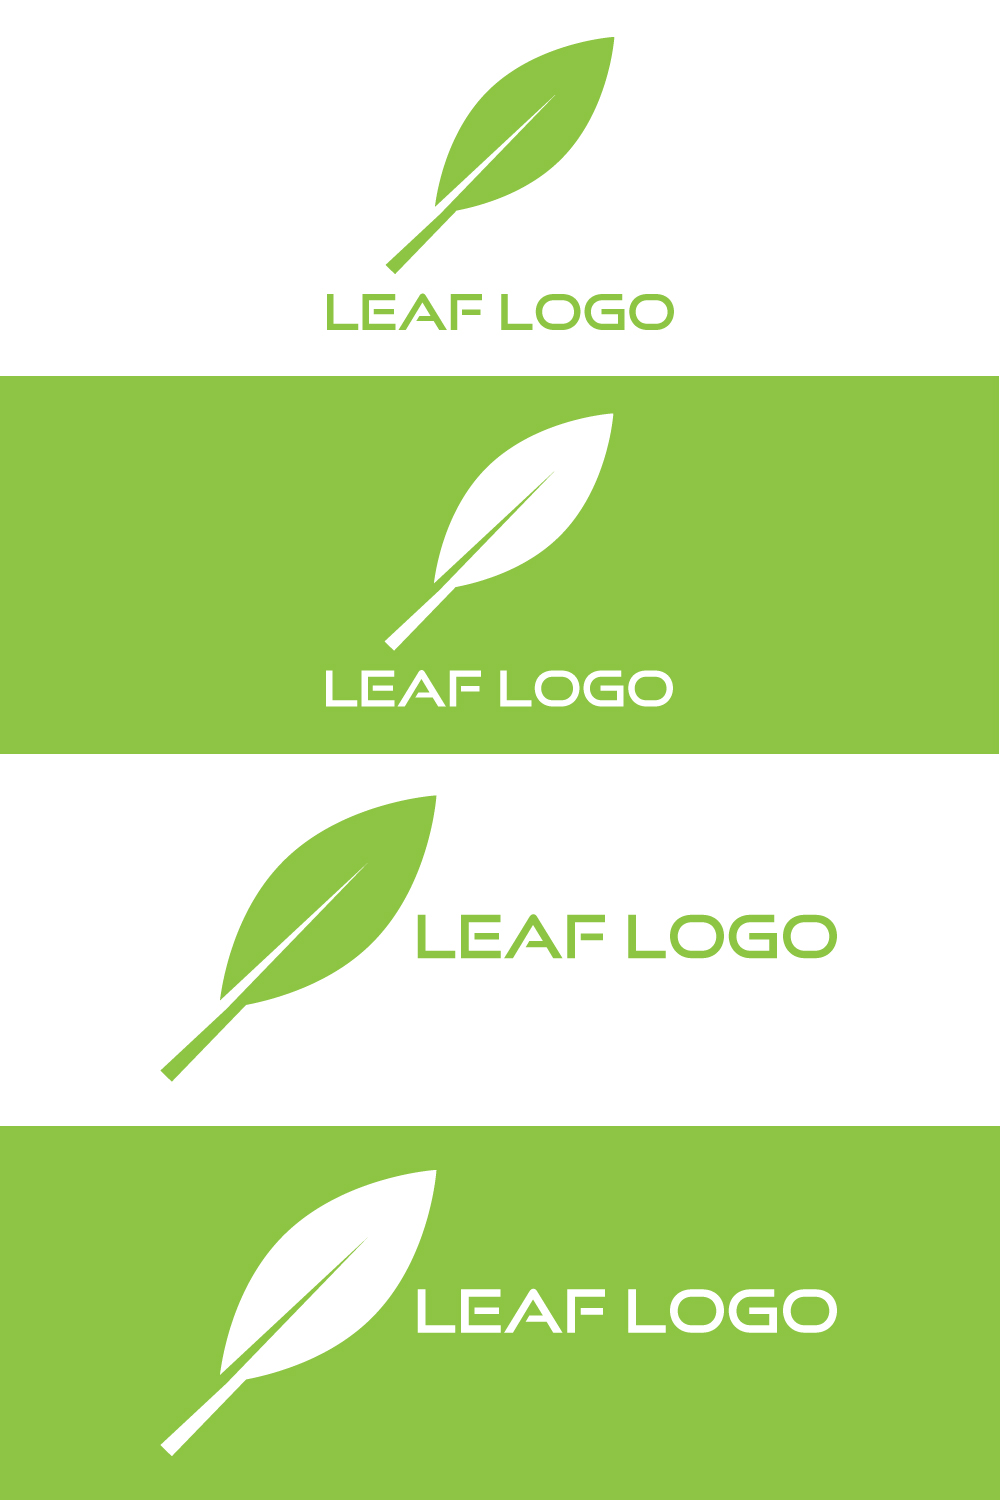 Green leaf logo, Simple leaf logo, Modern leaf logo, Creative leaf logo, Unique leaf logo, Stylish leaf logo, Vector file & template pinterest preview image.